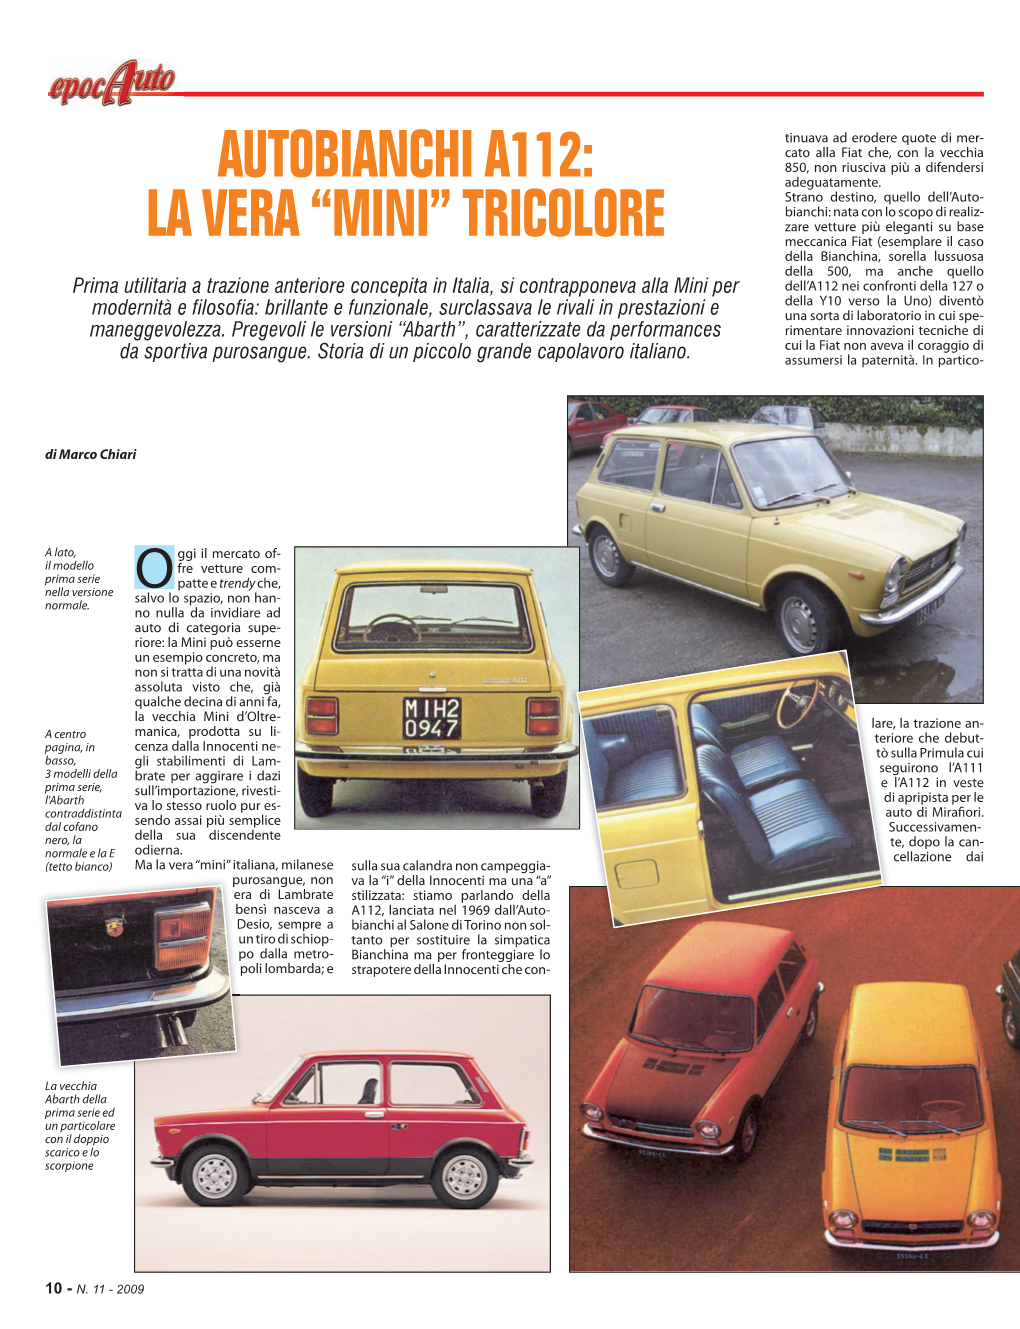 Autobianchi A112: La Vera “Mini” Tricolore